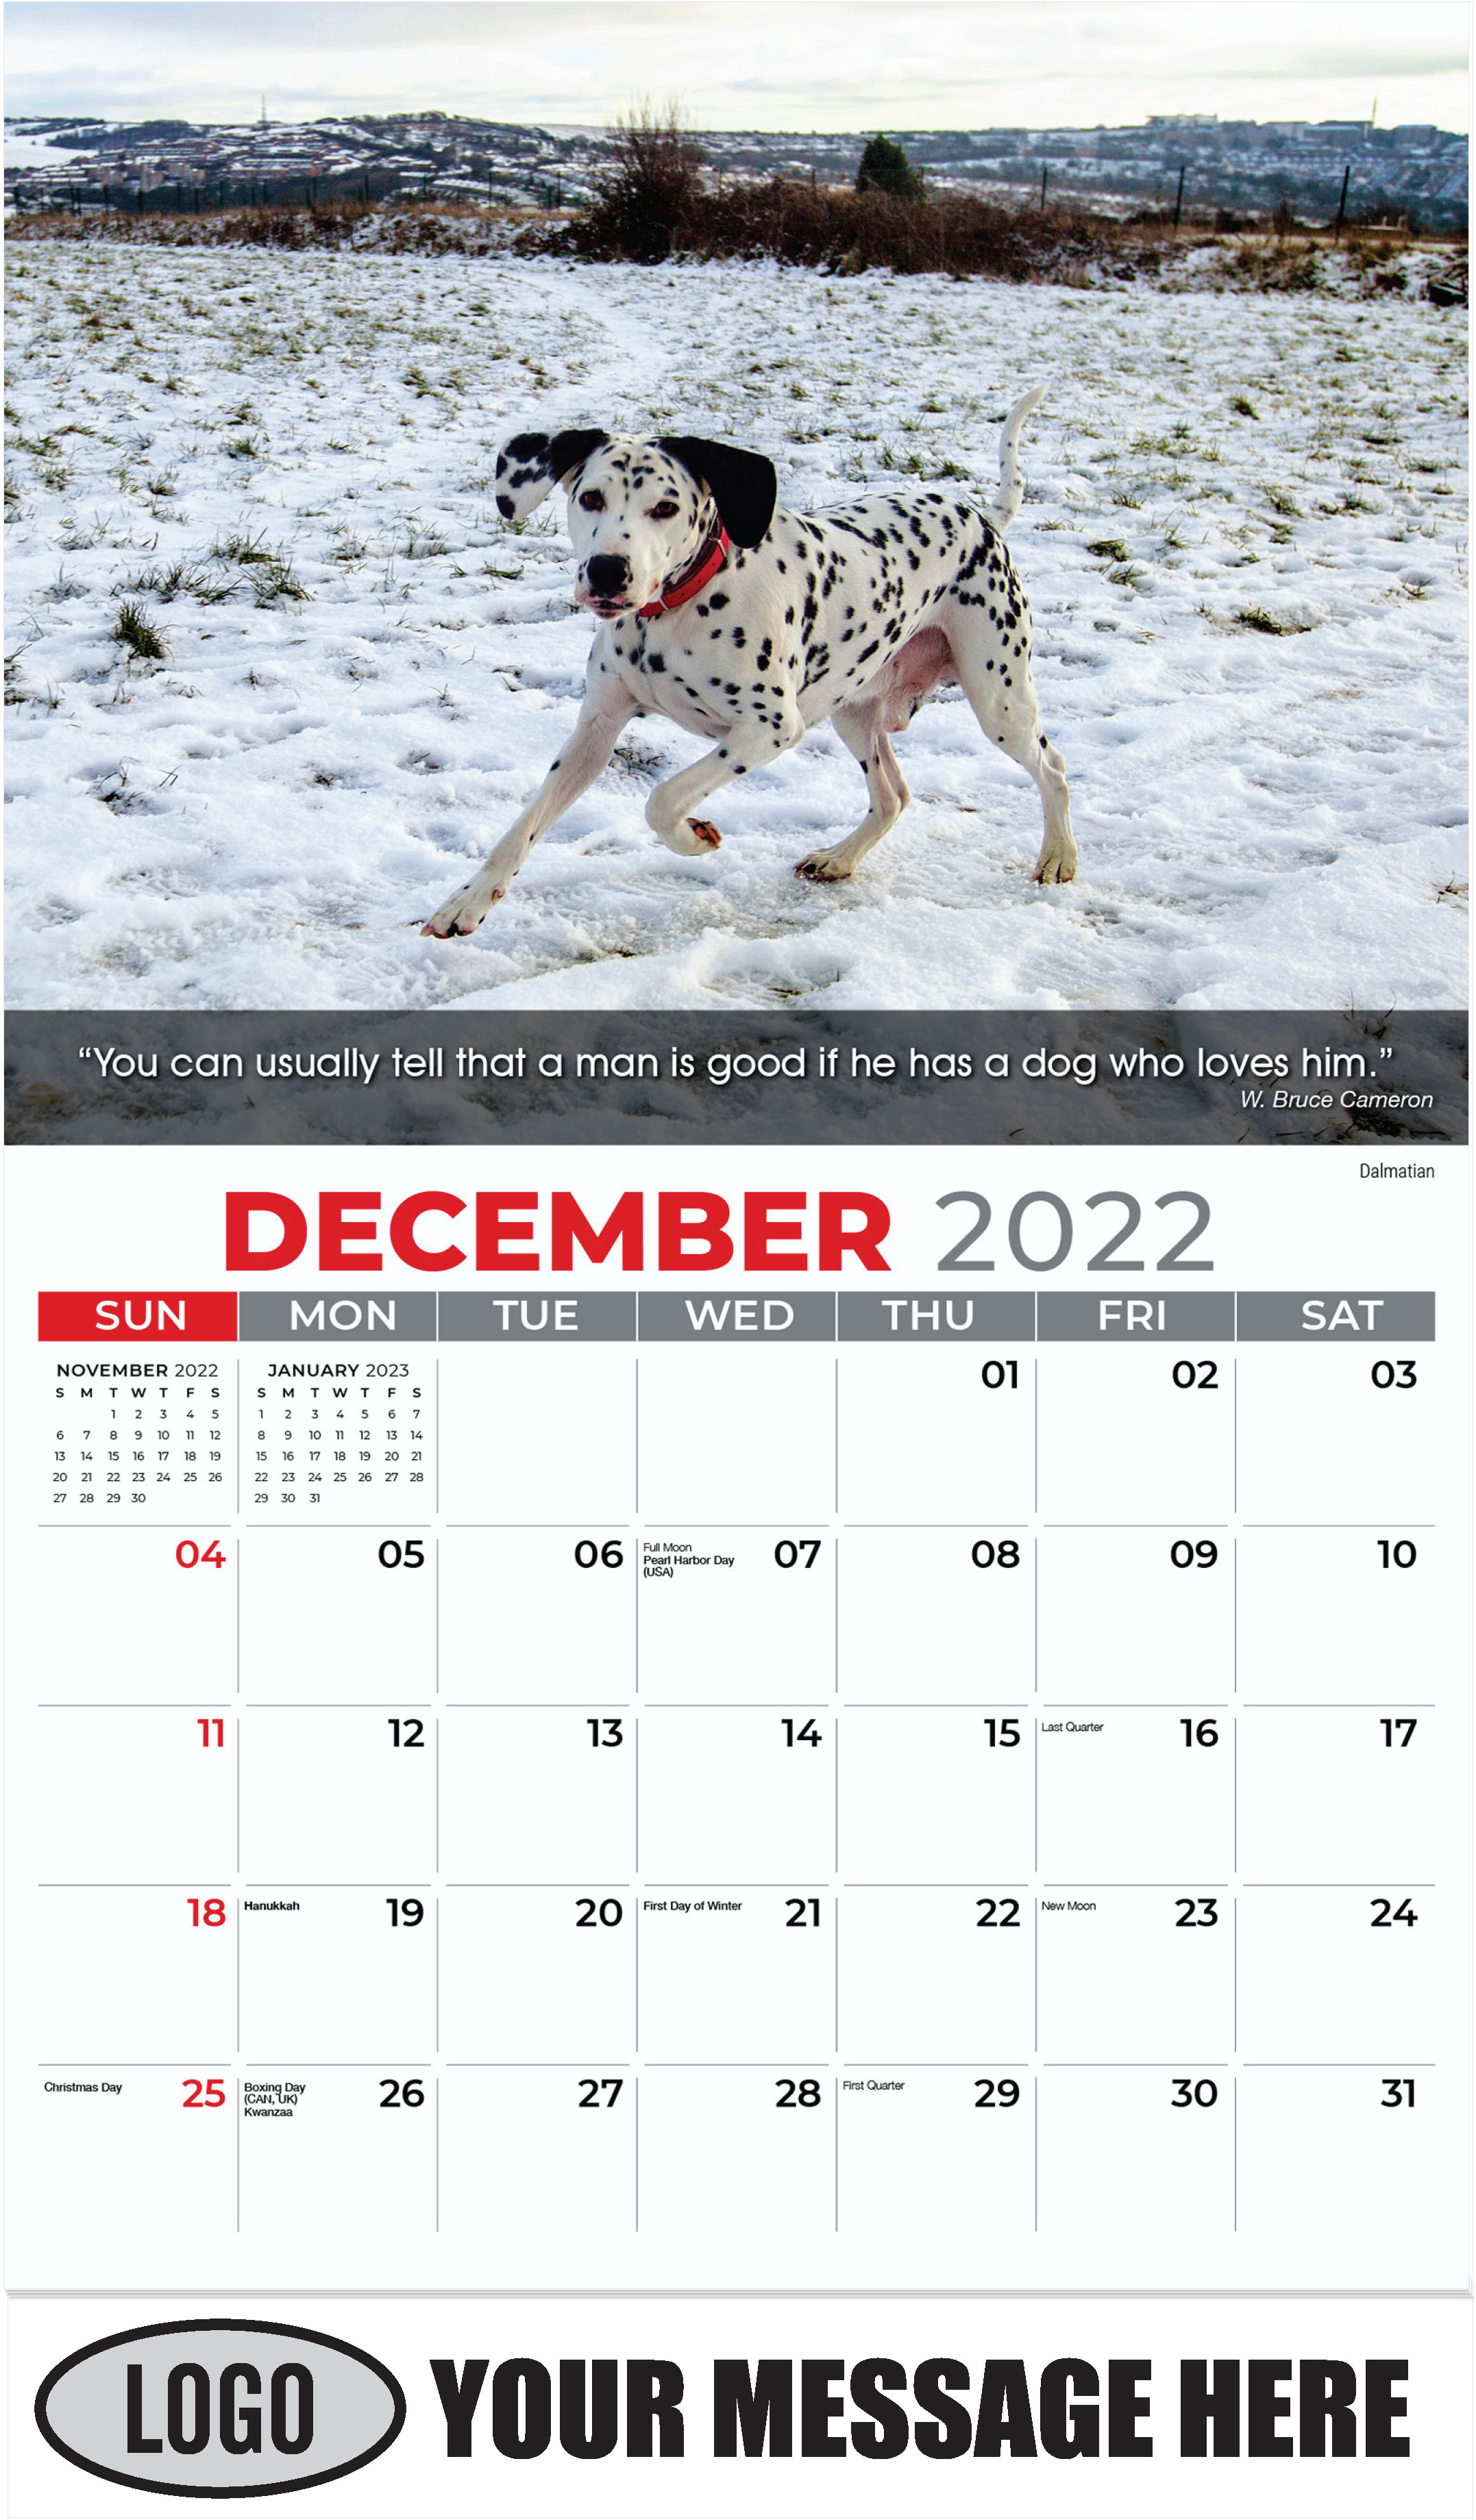 Dalmatian - December 2022 - Dogs, ''Man's Best Friends'' 2023 Promotional Calendar